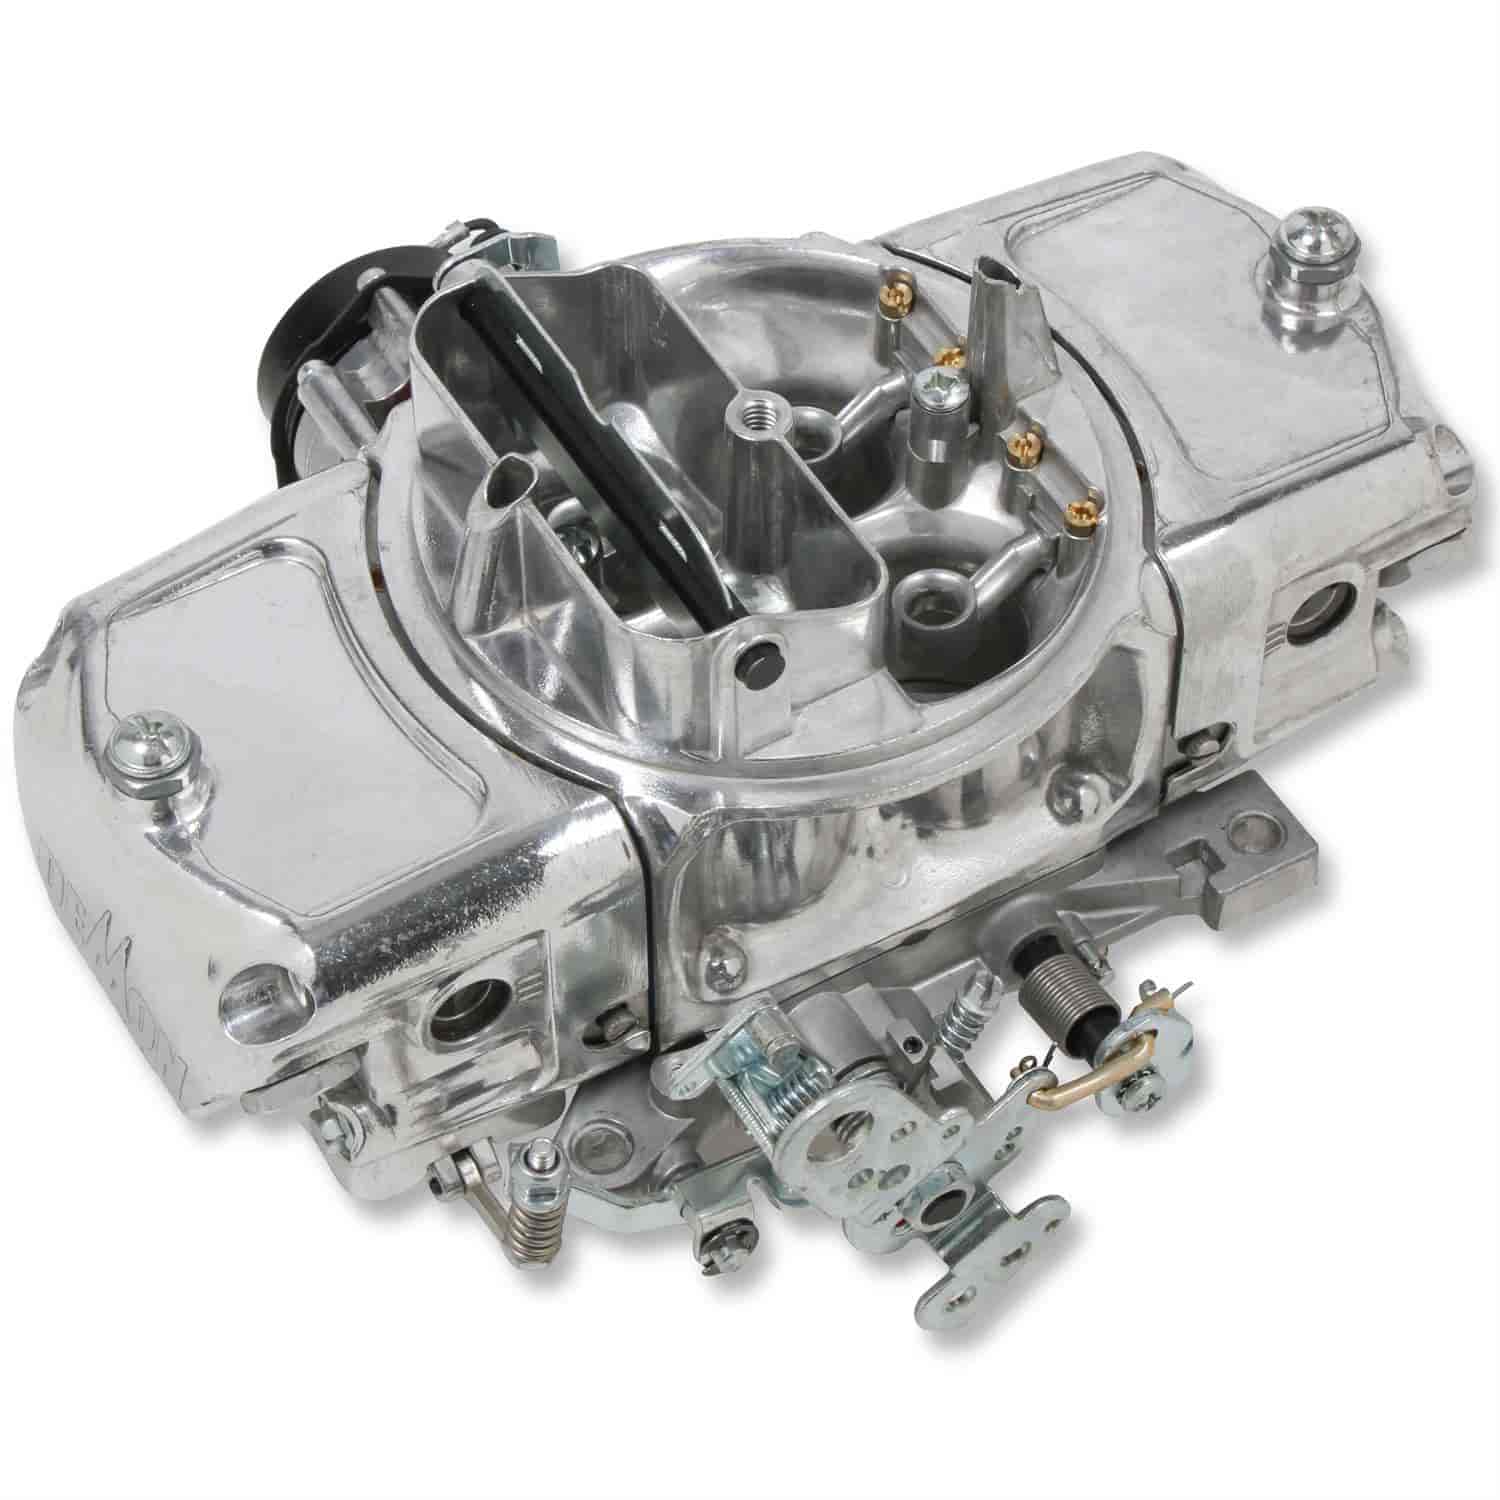 650 CFM Road Demon Carburetor [Electric Choke, Mechanical Secondaries]